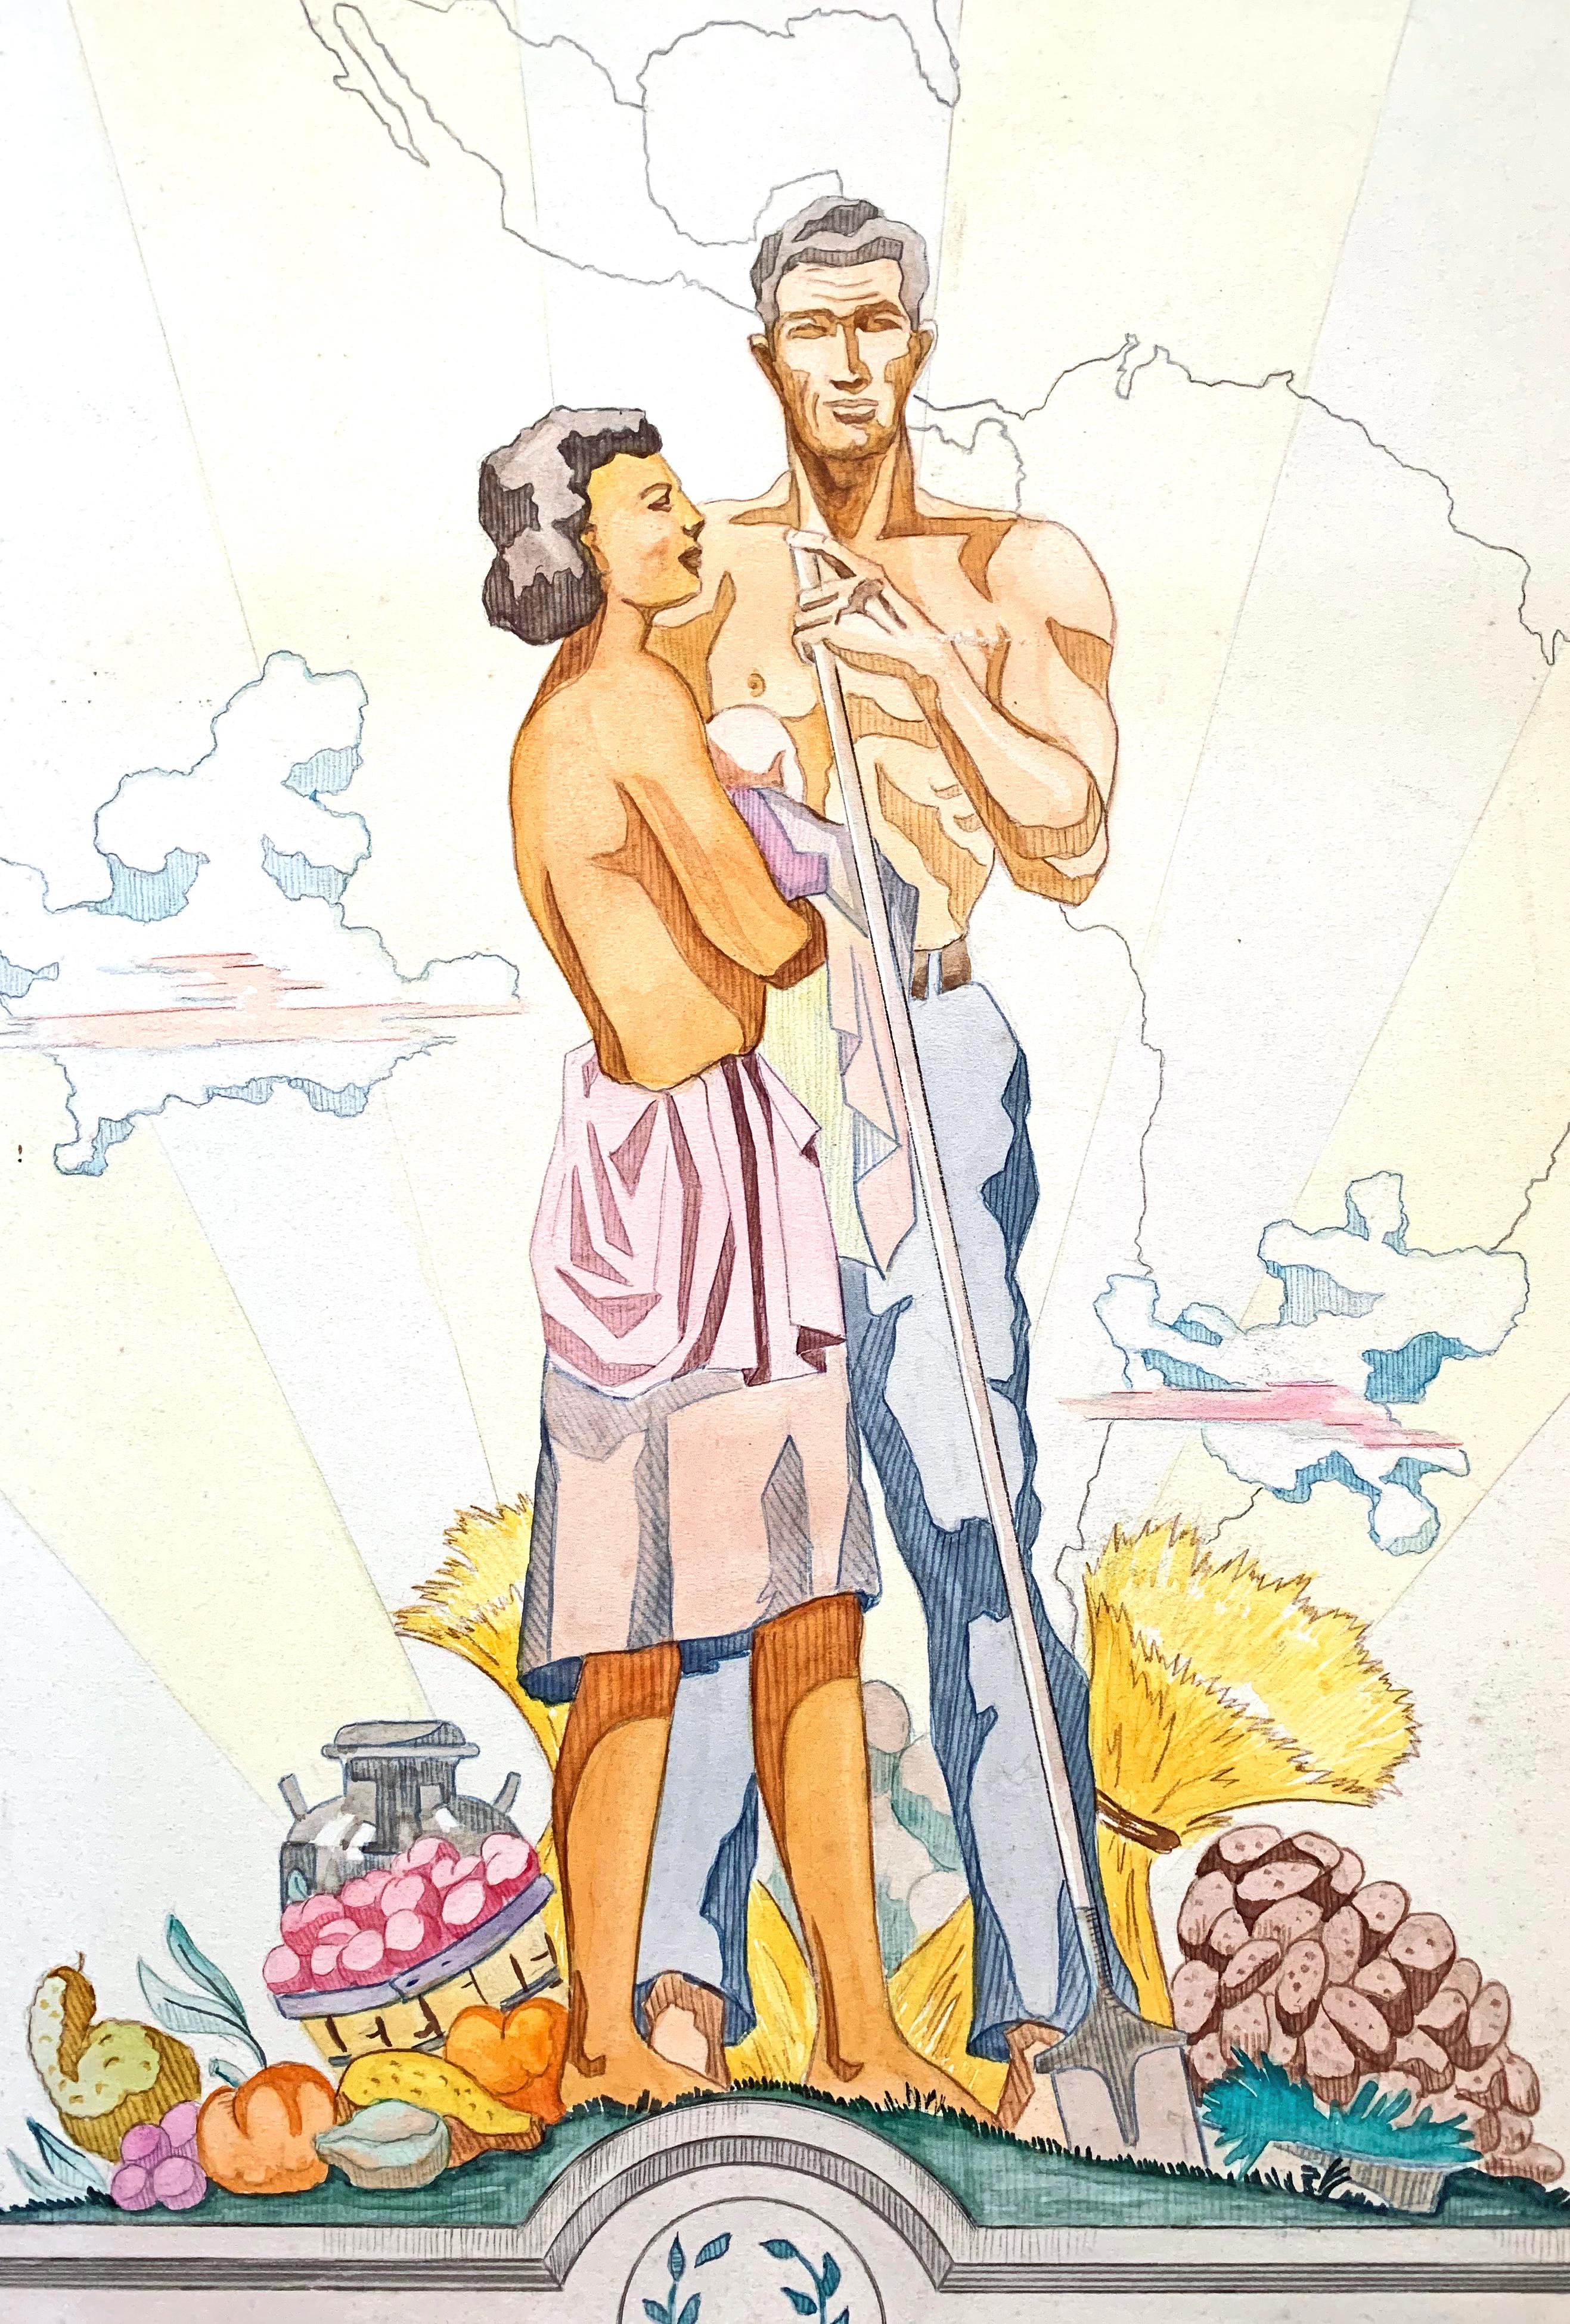 Dieses Tusche- und Aquarellgemälde war 1951 der Siegerbeitrag für ein großes Wandgemälde in Fort Meade in Maryland, das im Rahmen eines Gestaltungswettbewerbs für einen der Serviceclubs ausgeschrieben wurde. Wir wissen nicht, ob das Wandgemälde